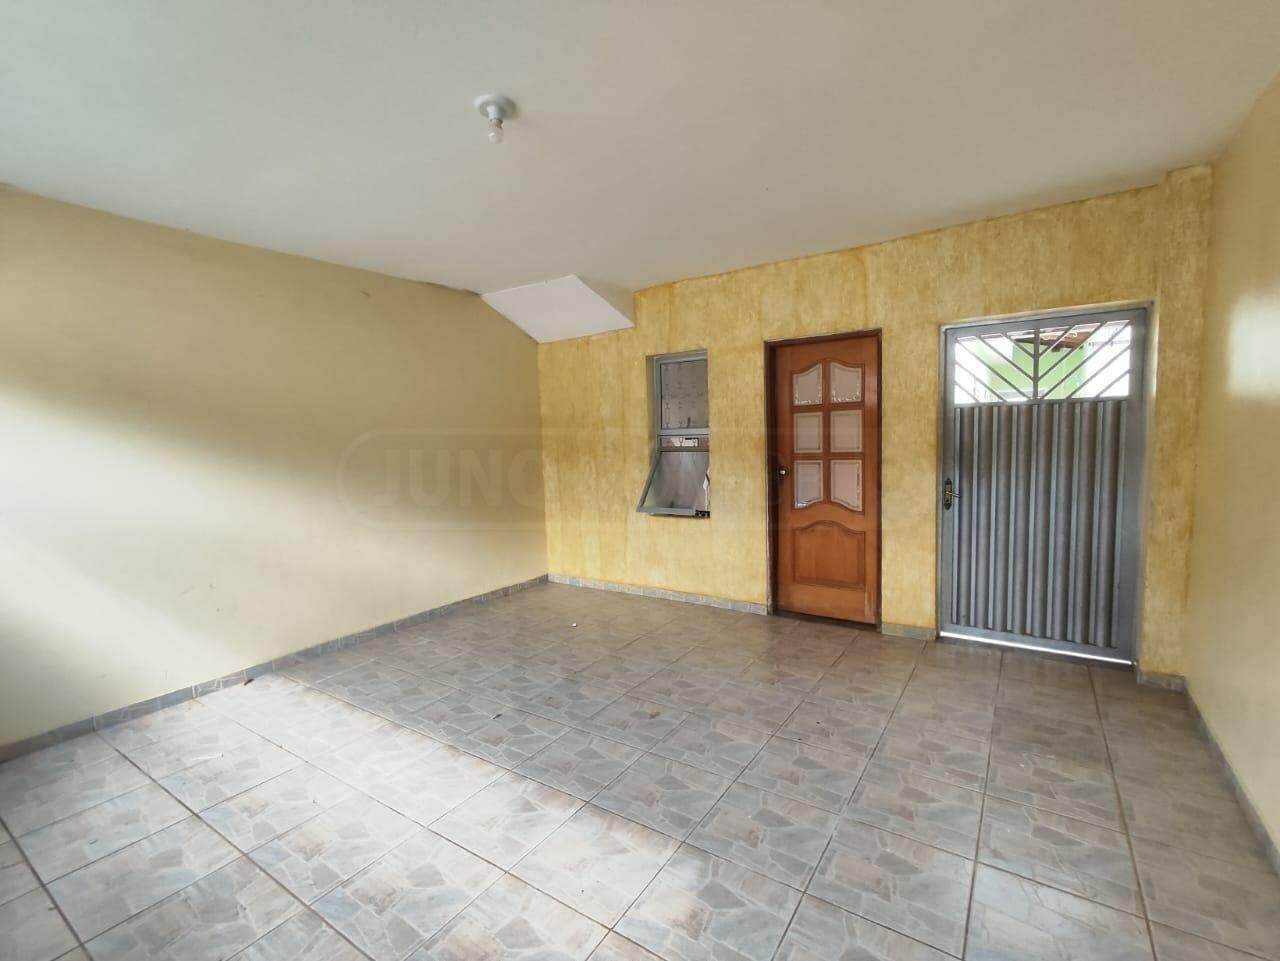 Casa à venda, 4 quartos, 2 vagas, no bairro Conjunto Residencial Vitório Cezarino em Rio das Pedras - SP